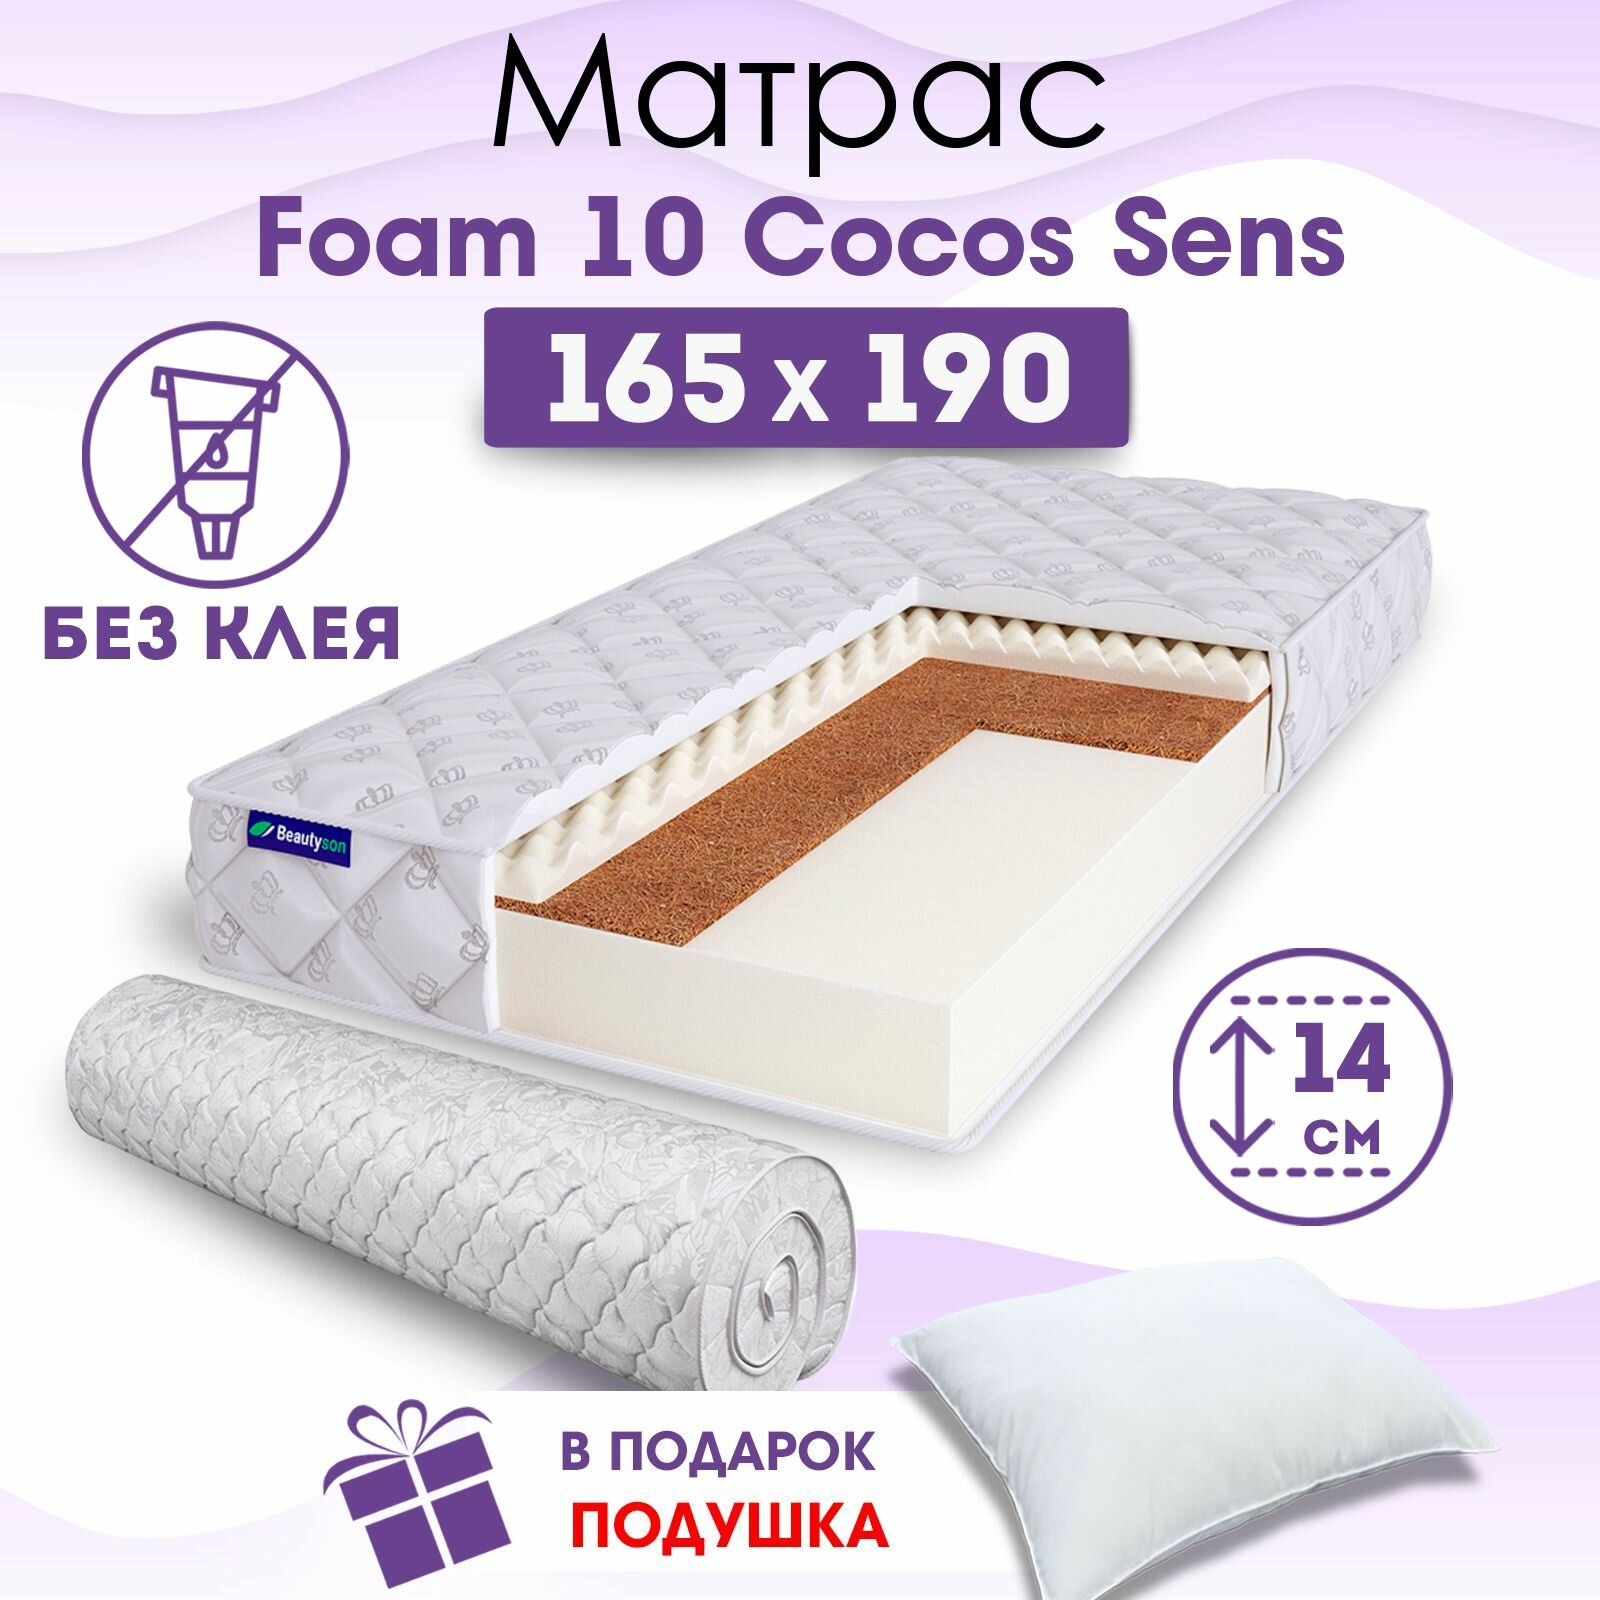 Ортопедический матрас Beautyson Foam 10 Cocos Sens без клея, 165х190, 14 см, беспружинный, двухспальный, на кровать, для дивана, умеренно мягкий